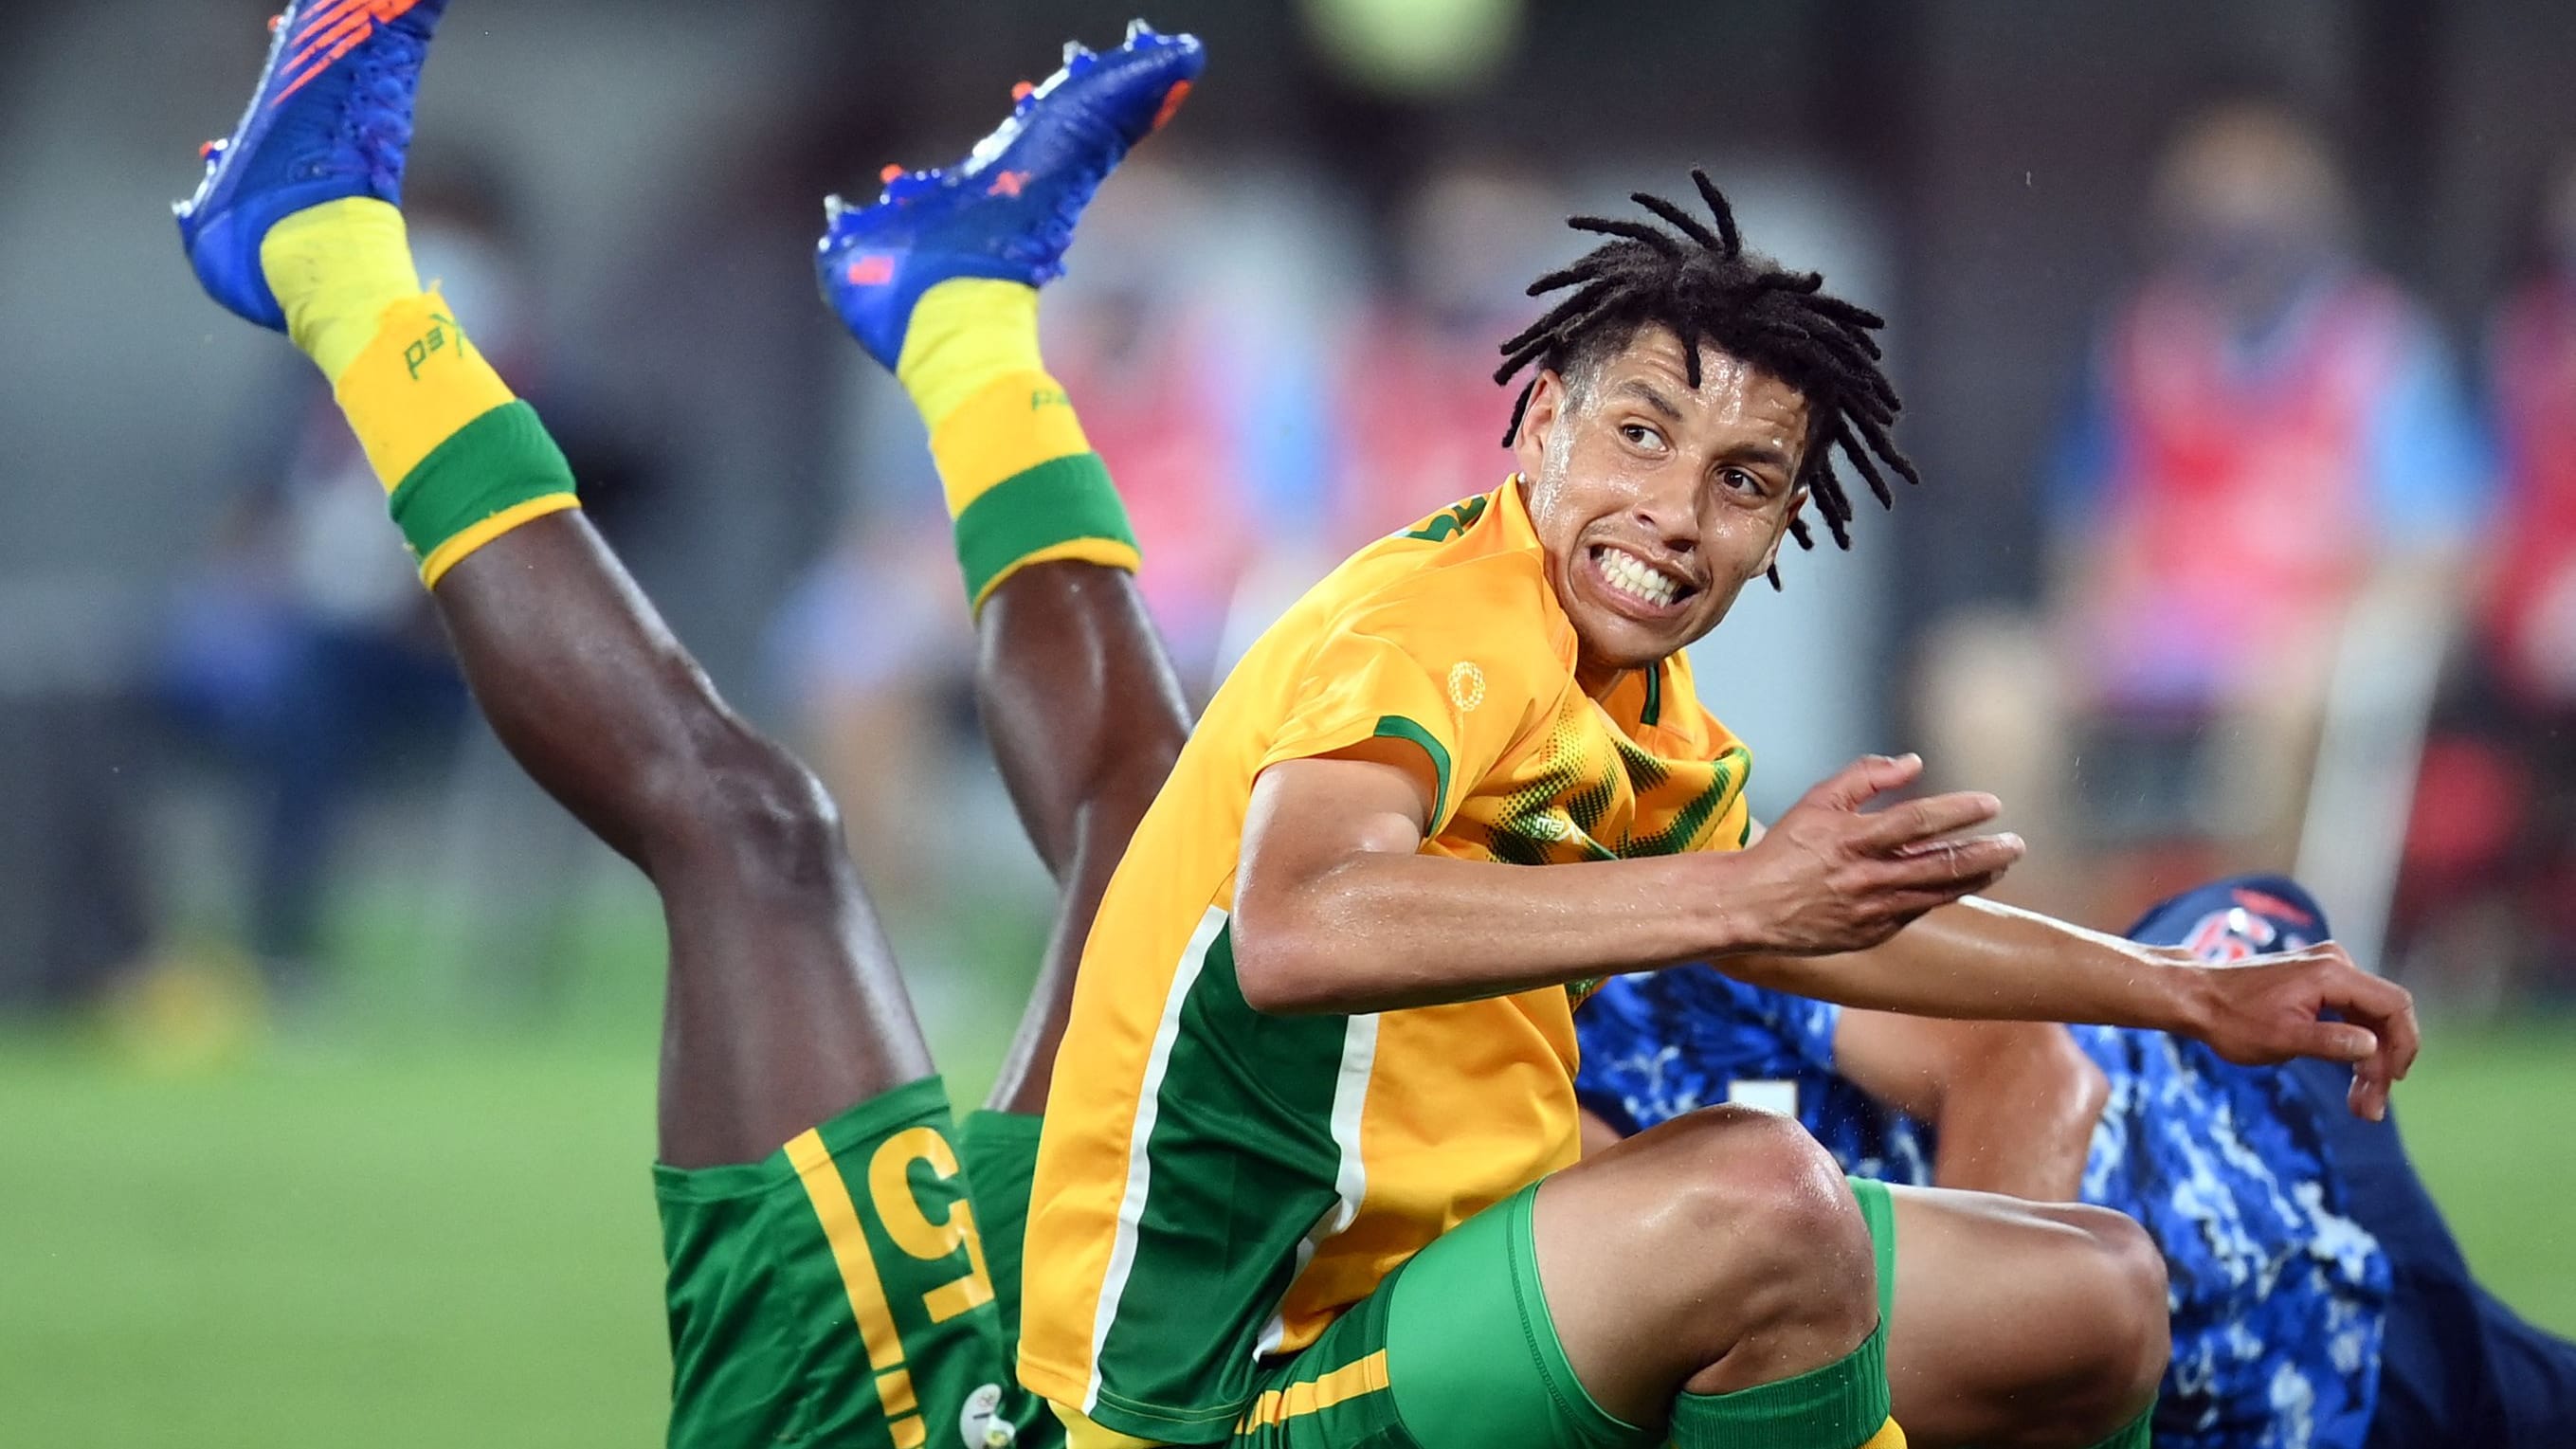 Luke Fleurs: Südafrikanischer Fußballspieler stirbt nach Überfall